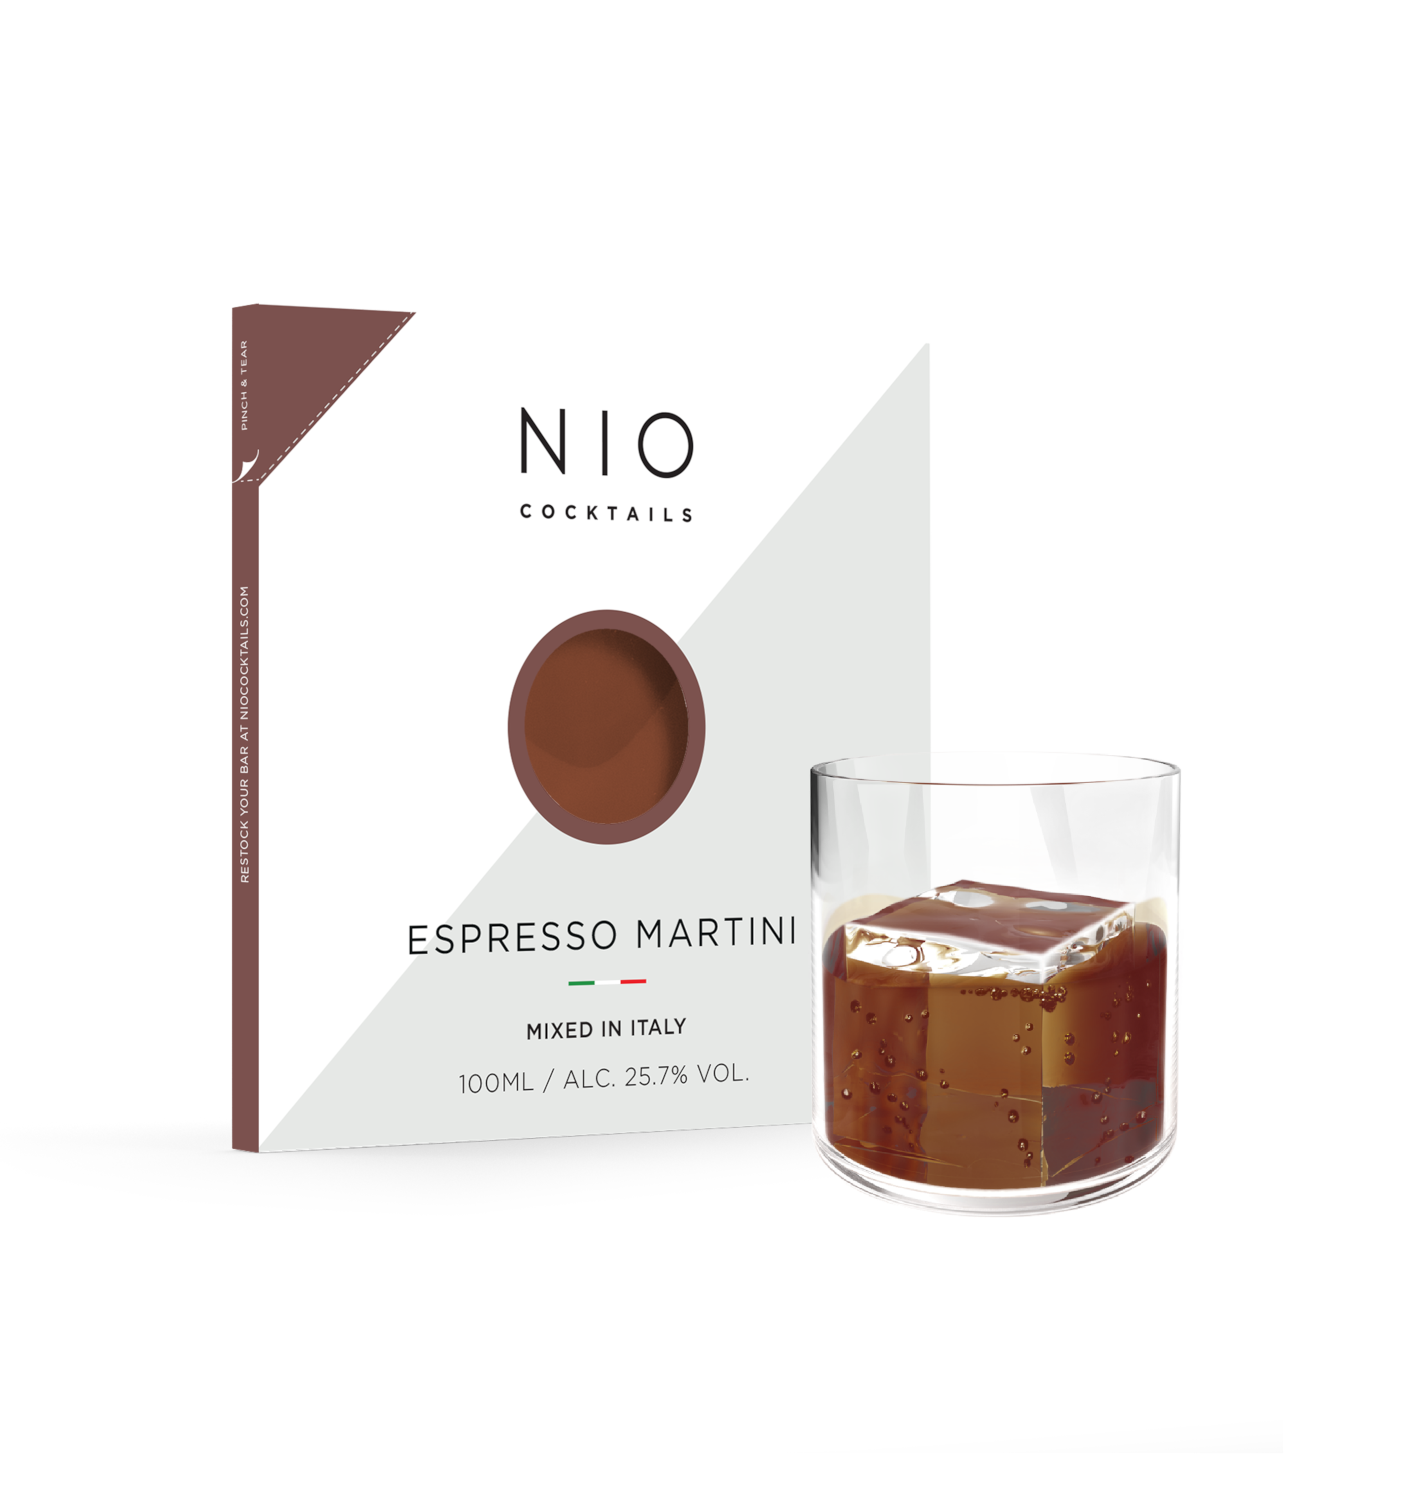 NIO Cocktails - Espresso Martini